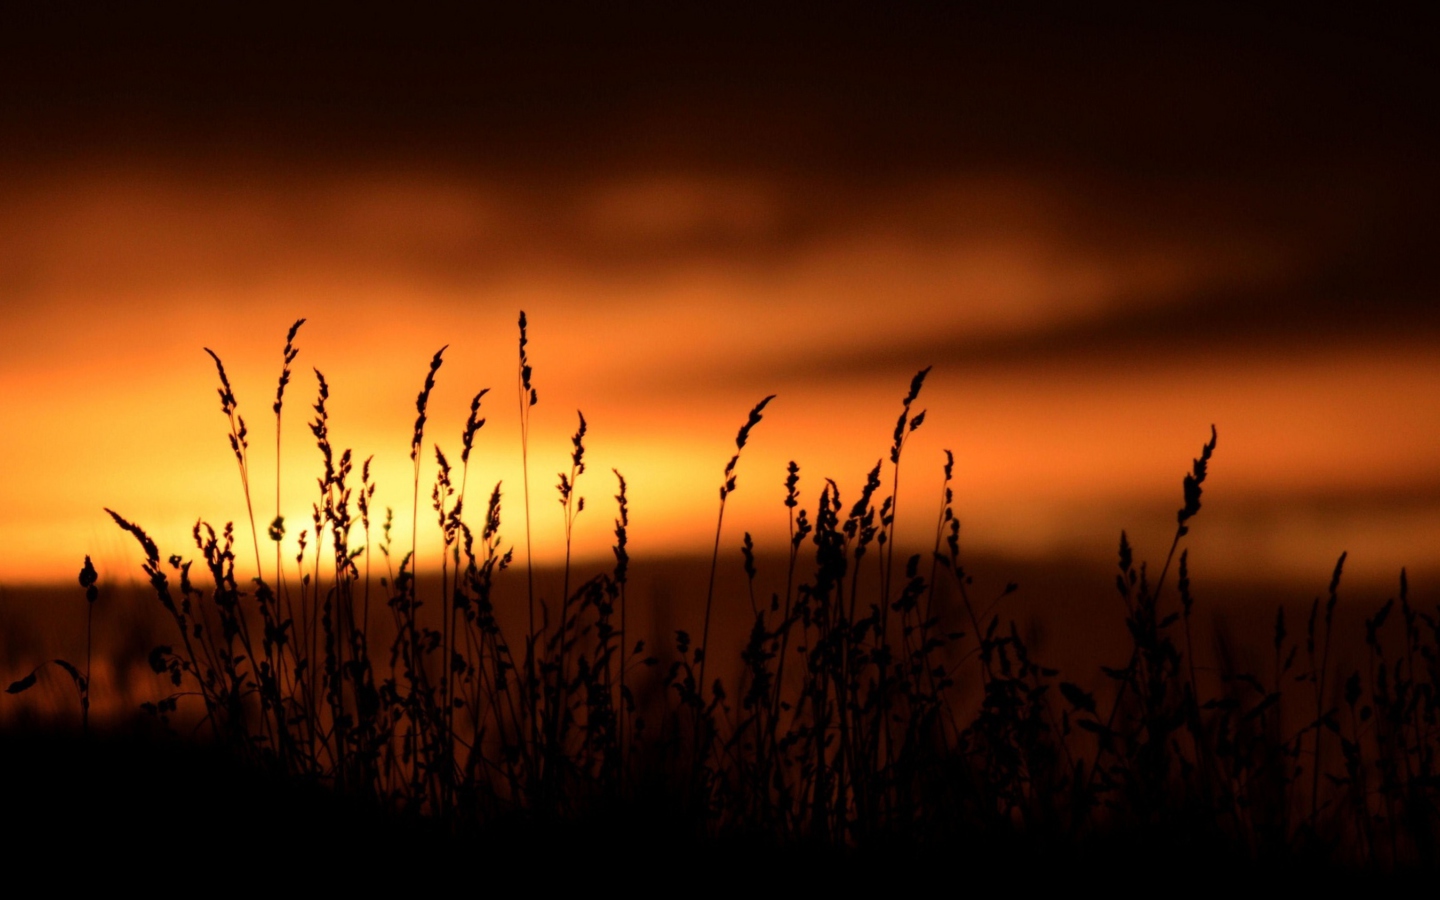 Sfondi Sunset Silhouettes 1440x900